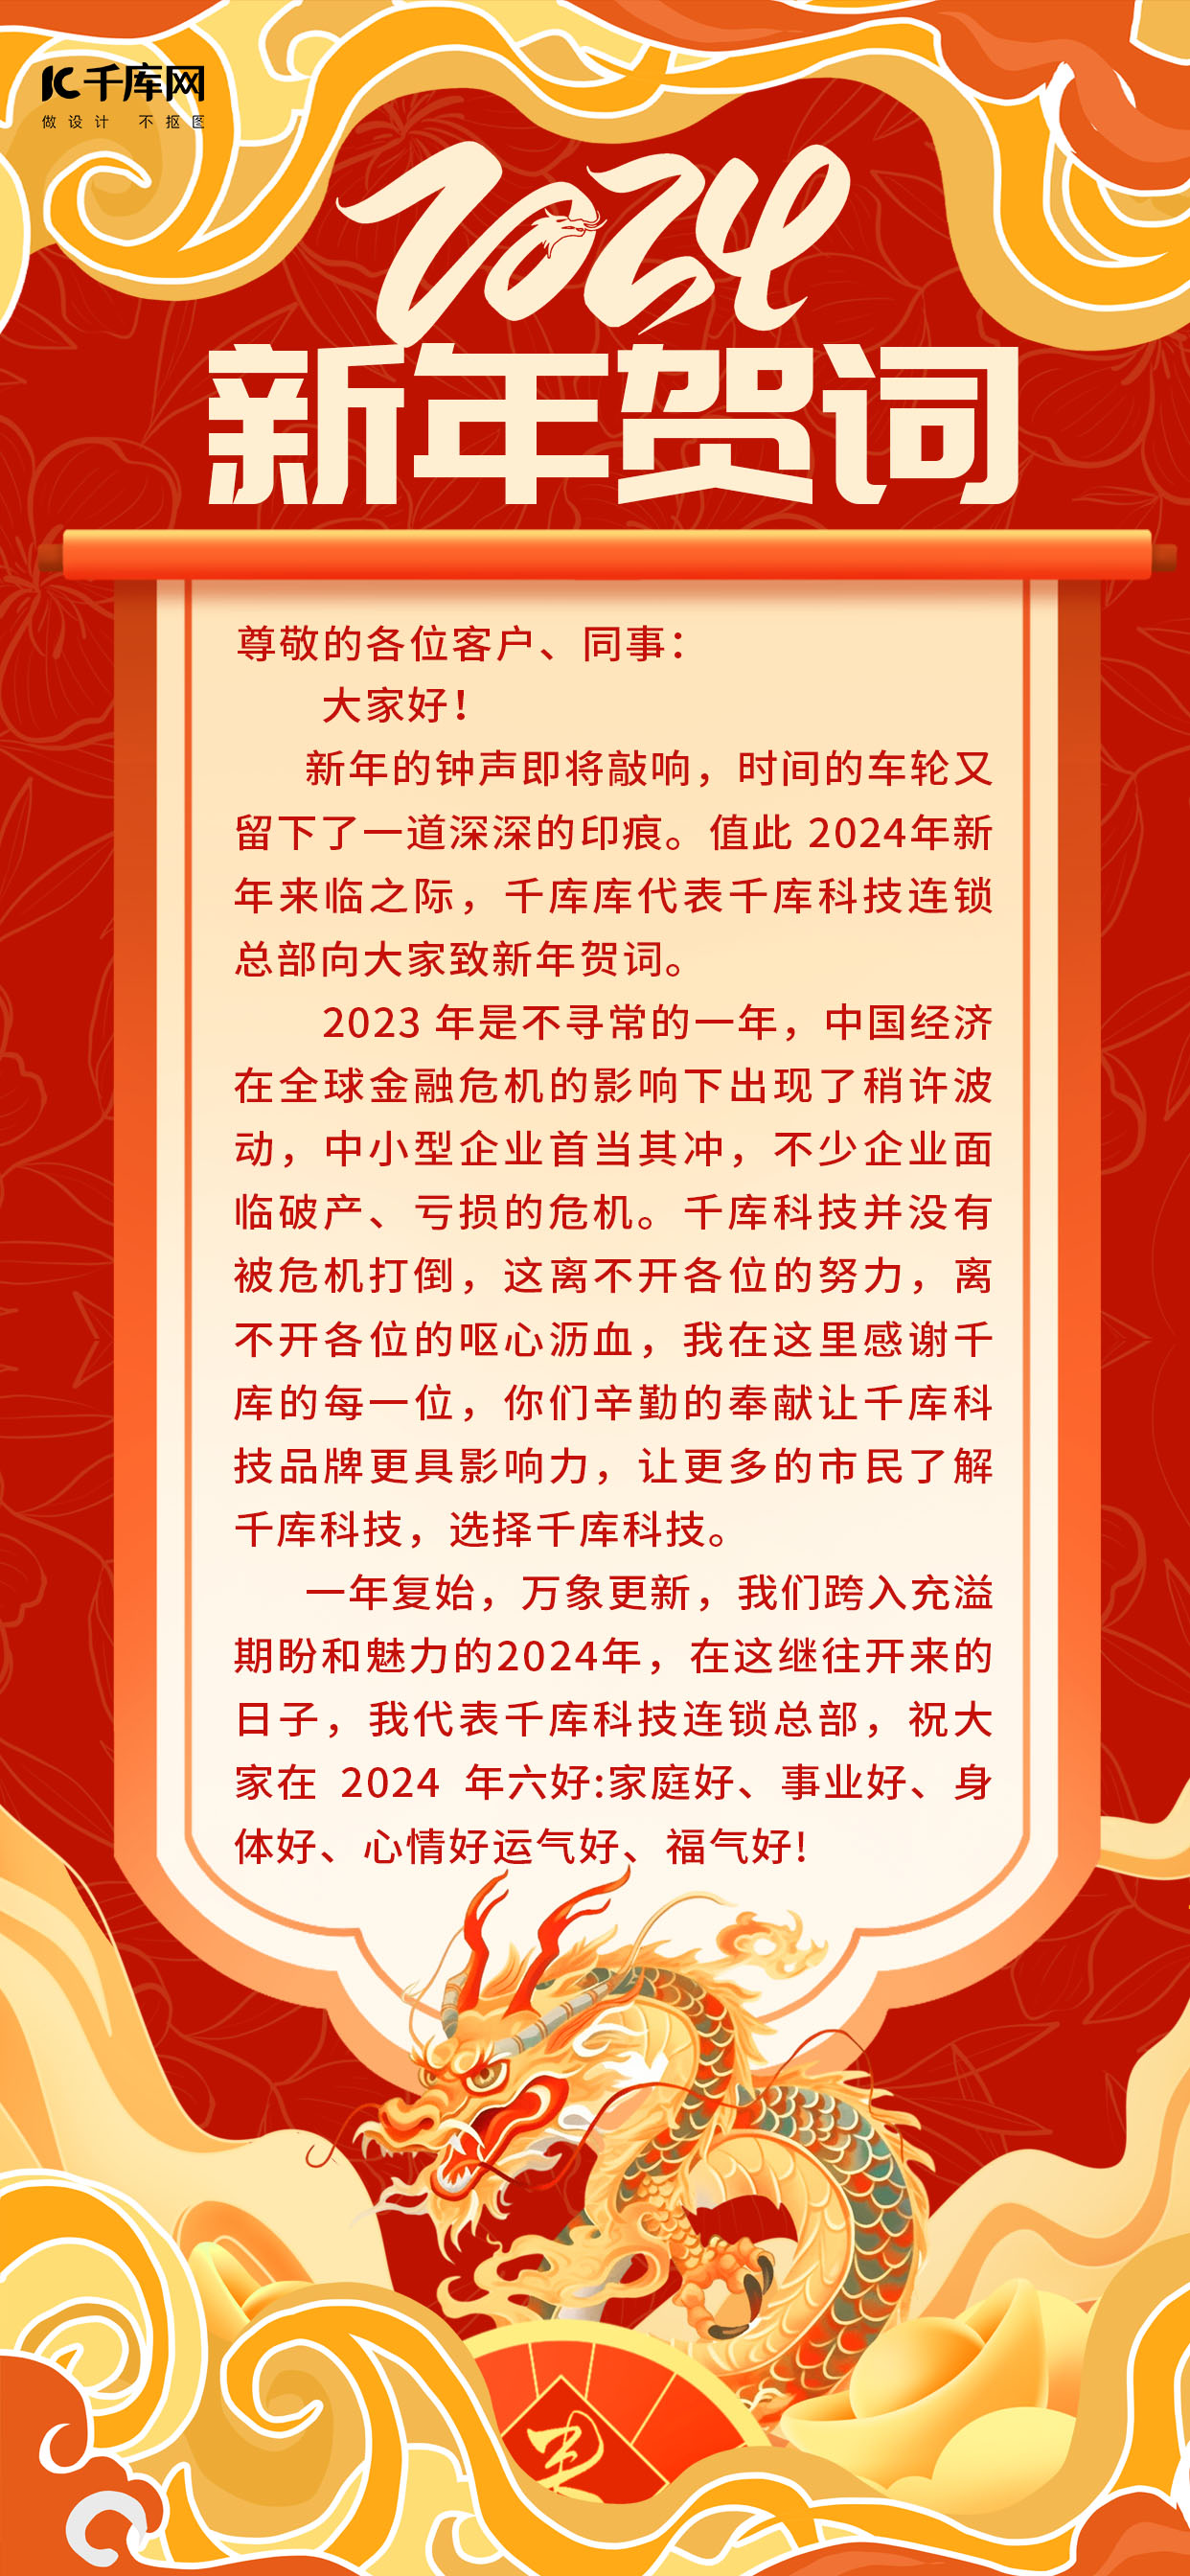 新年贺词卷轴祥云红色中国风文字素材海报图片